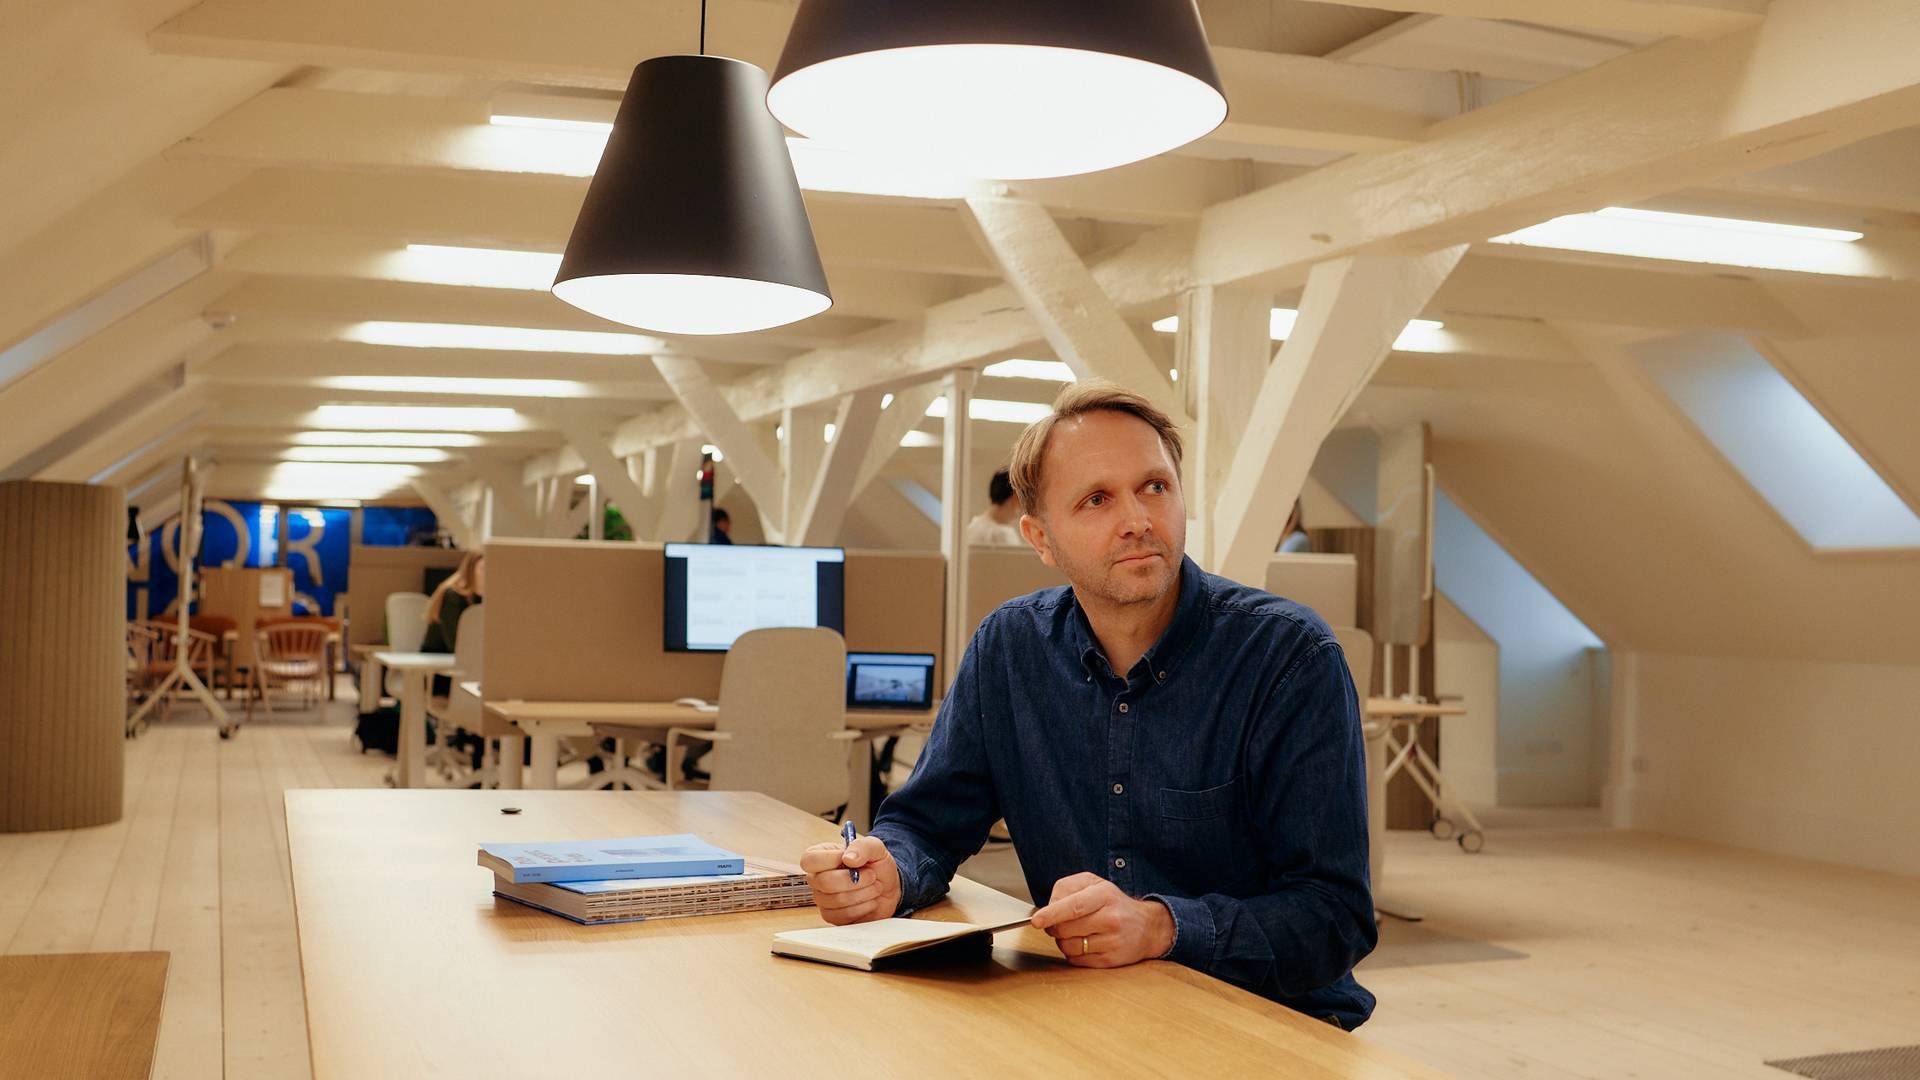 "En stor tillidserklæring til vores cirkulære forretningsmodel," siger Anders Jepsen, medstifter og adm. direktør i Nornorm, om ny bankfinansiering. | Foto: PR / Nornorm